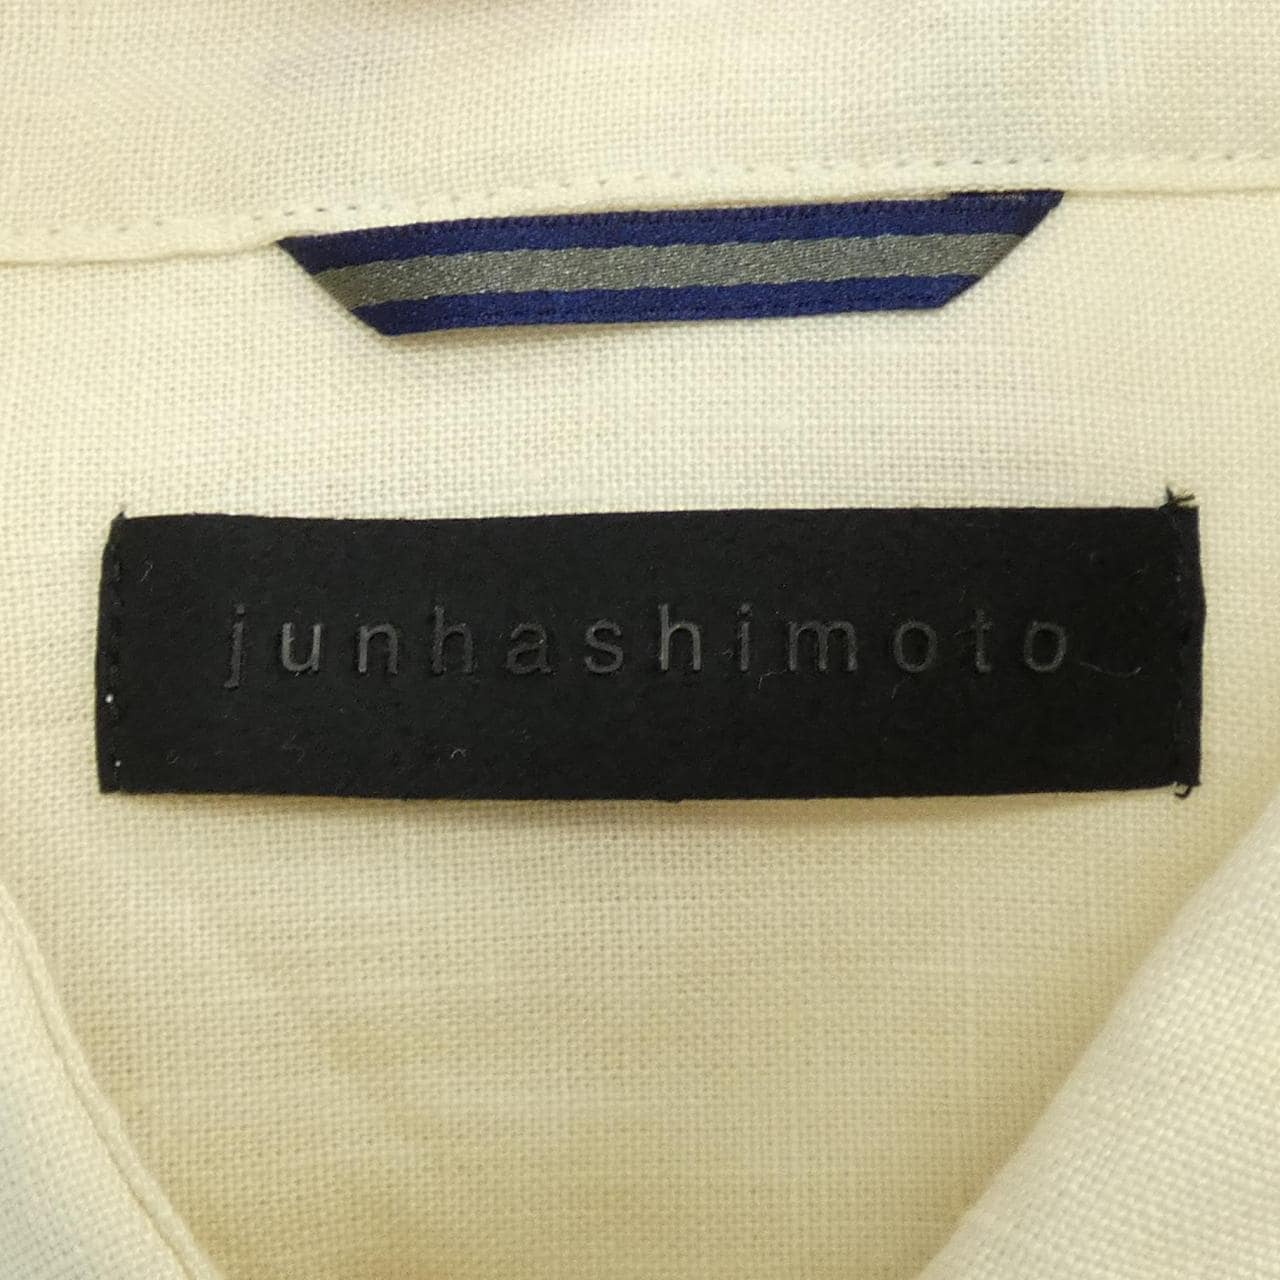 Jun Hashimoto shirt